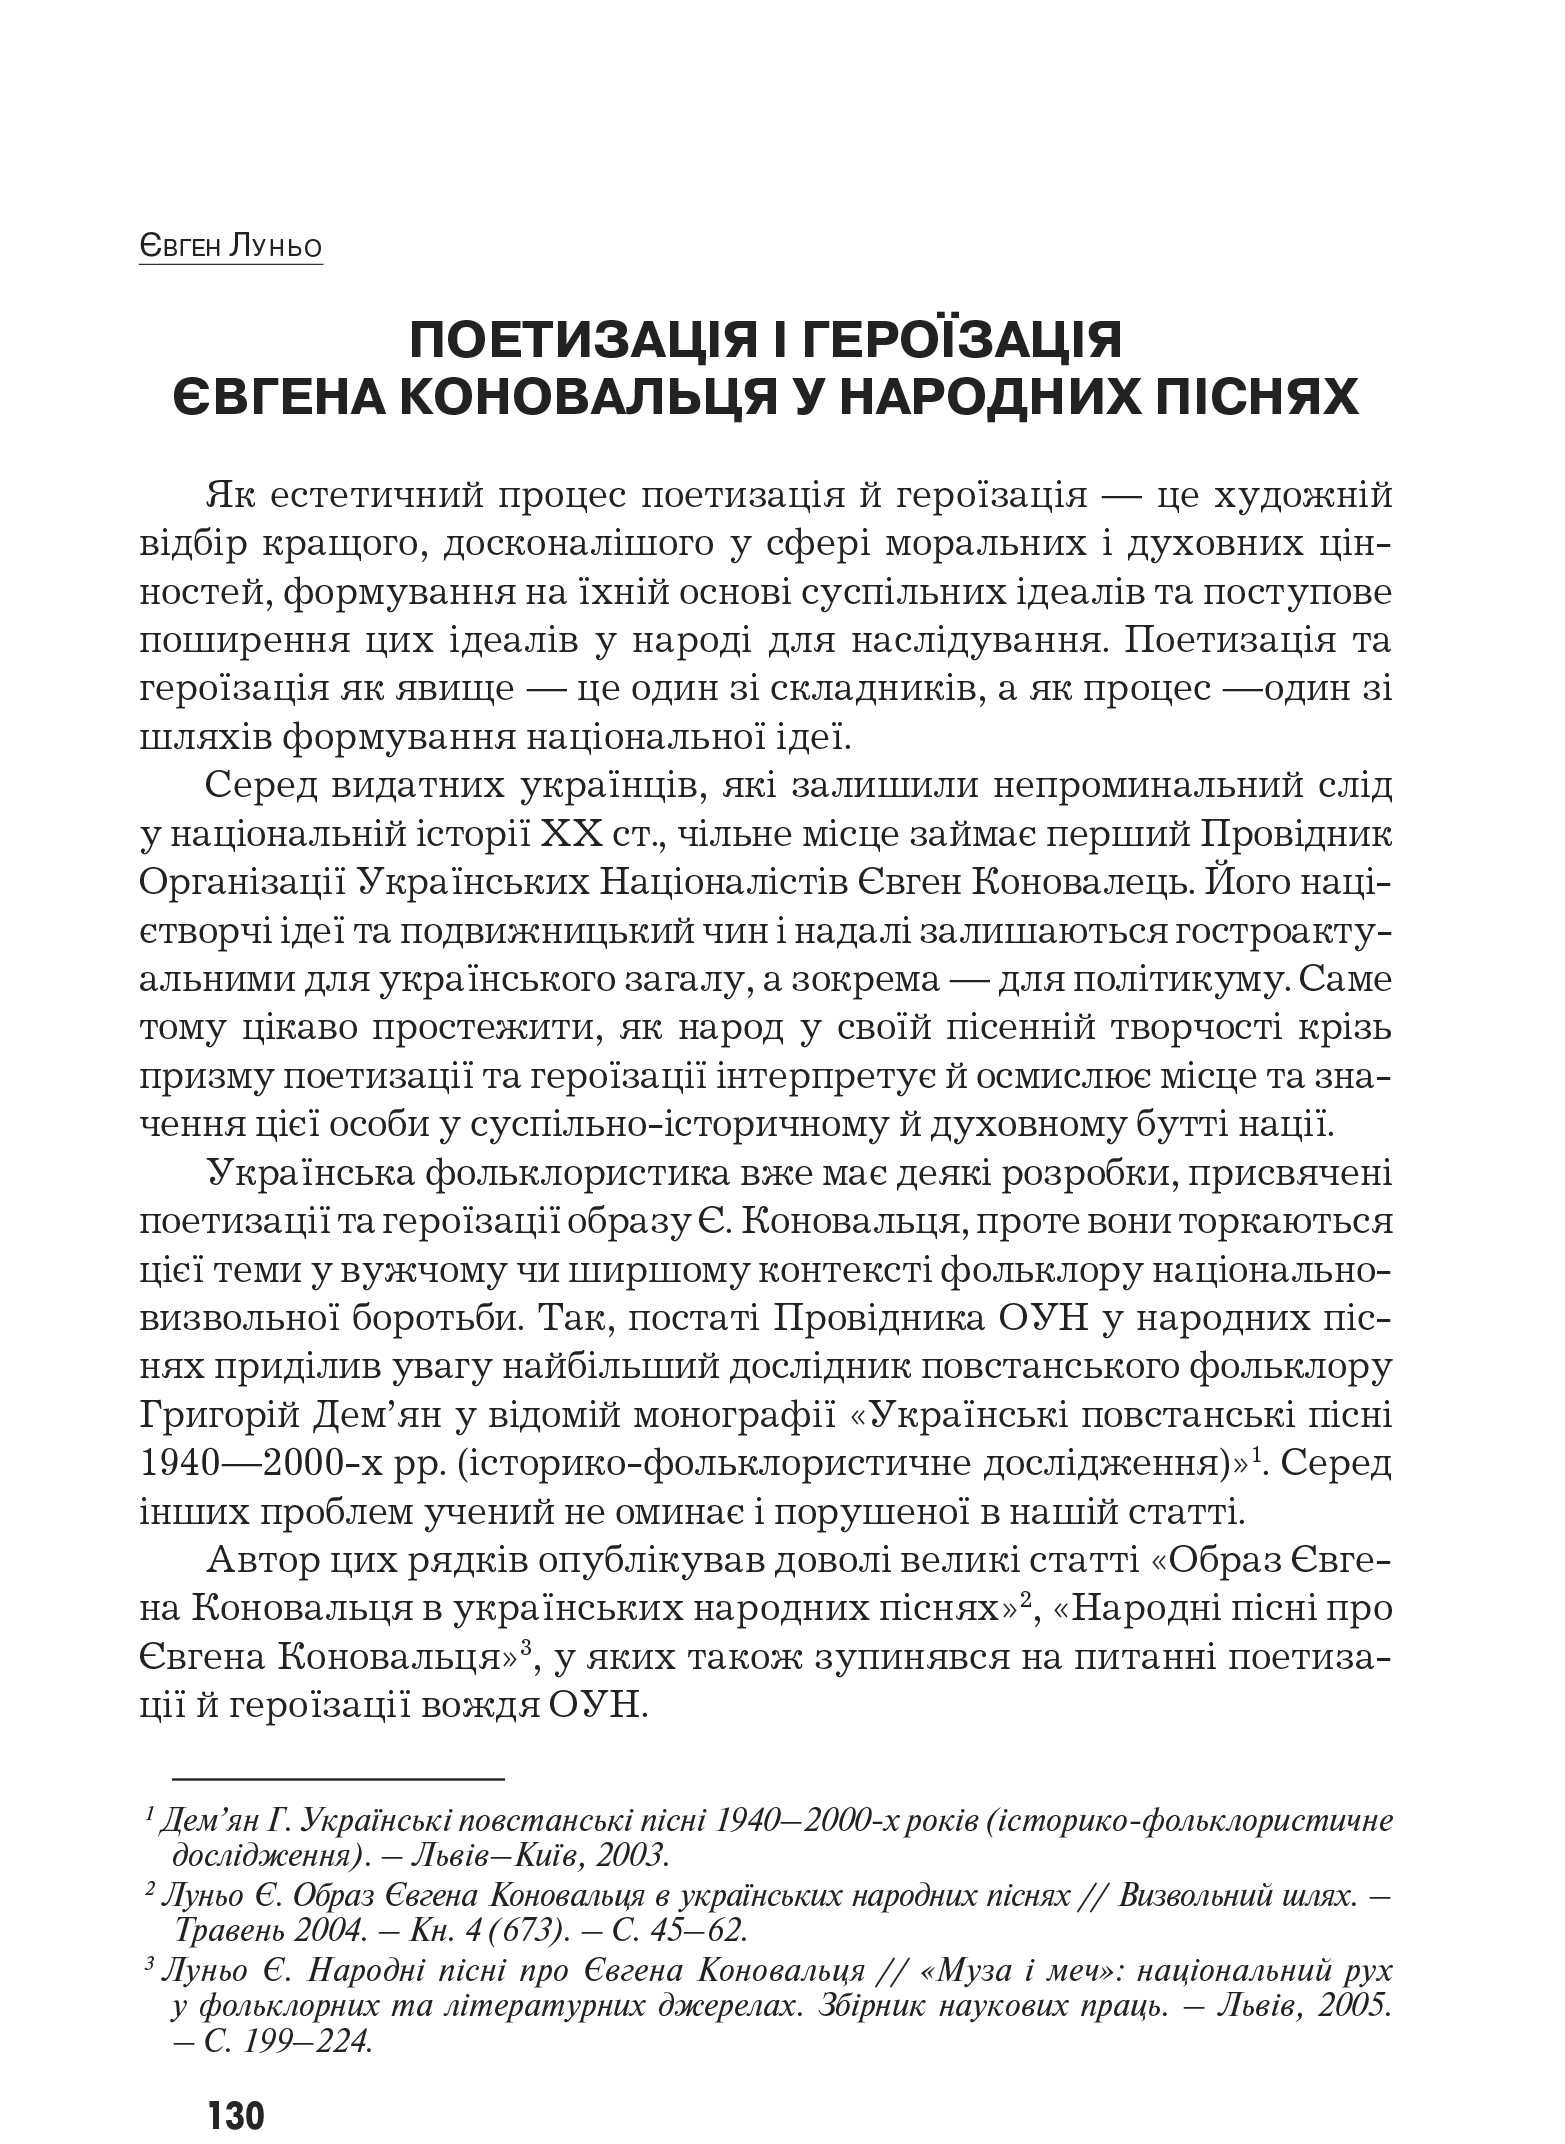 Український визвольний рух №8, ст. 130 - 152